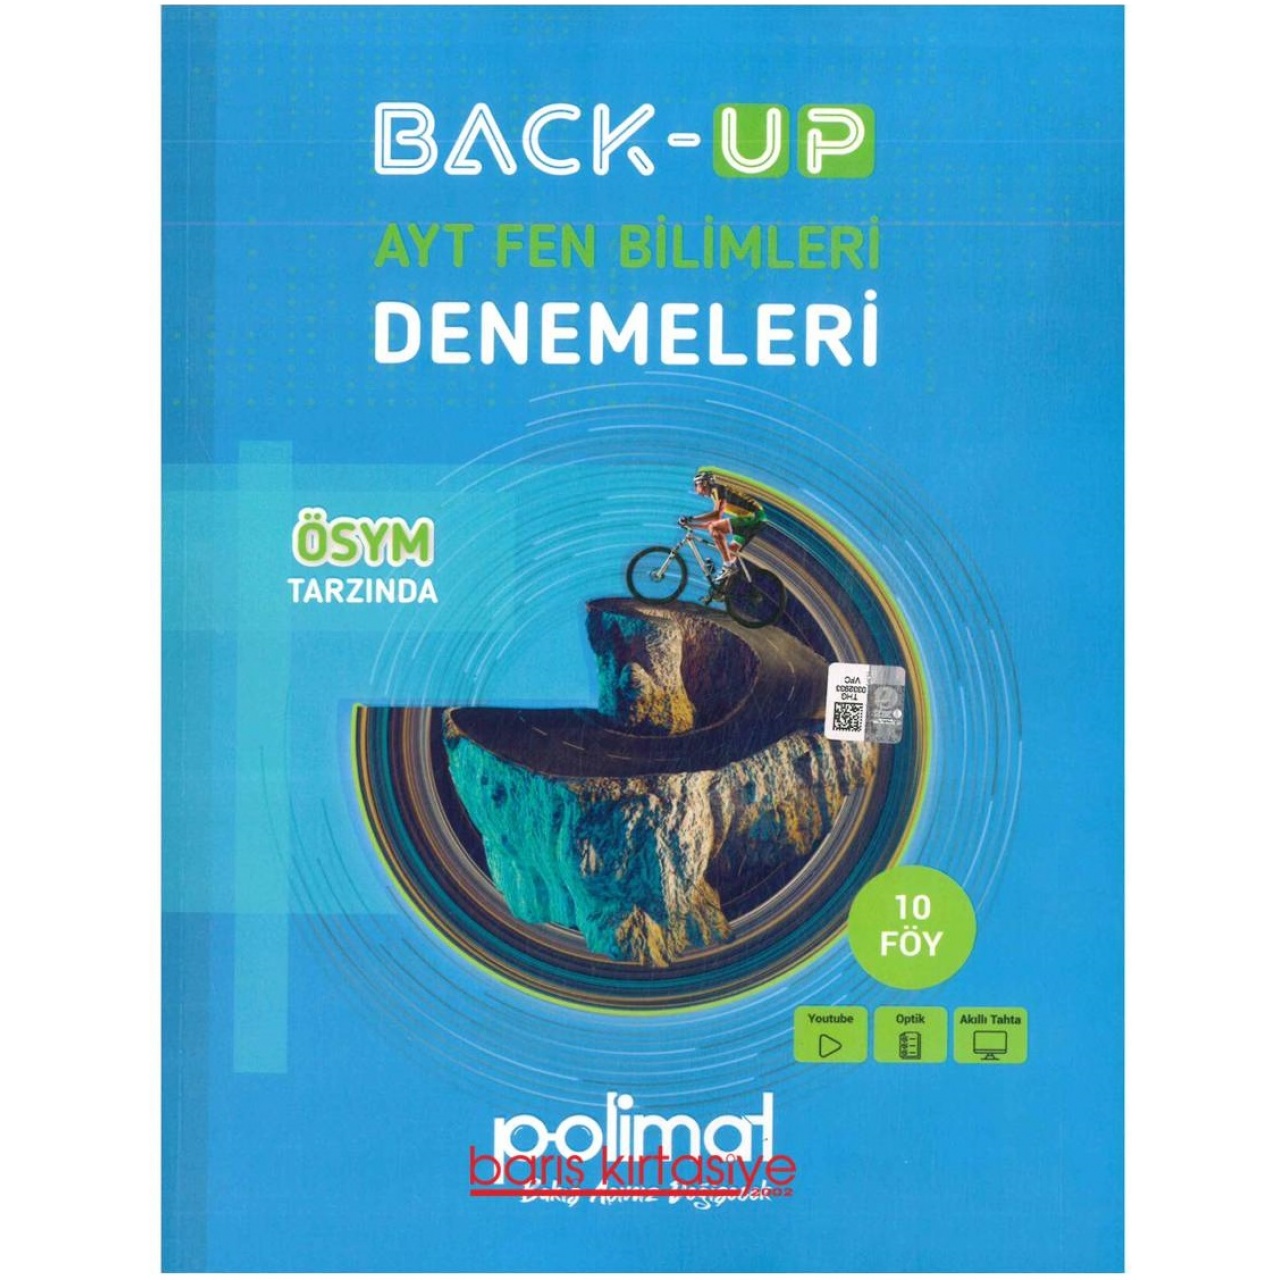 Back-Up AYT Fen Bilimleri Denemeleri Polimat Yayınları